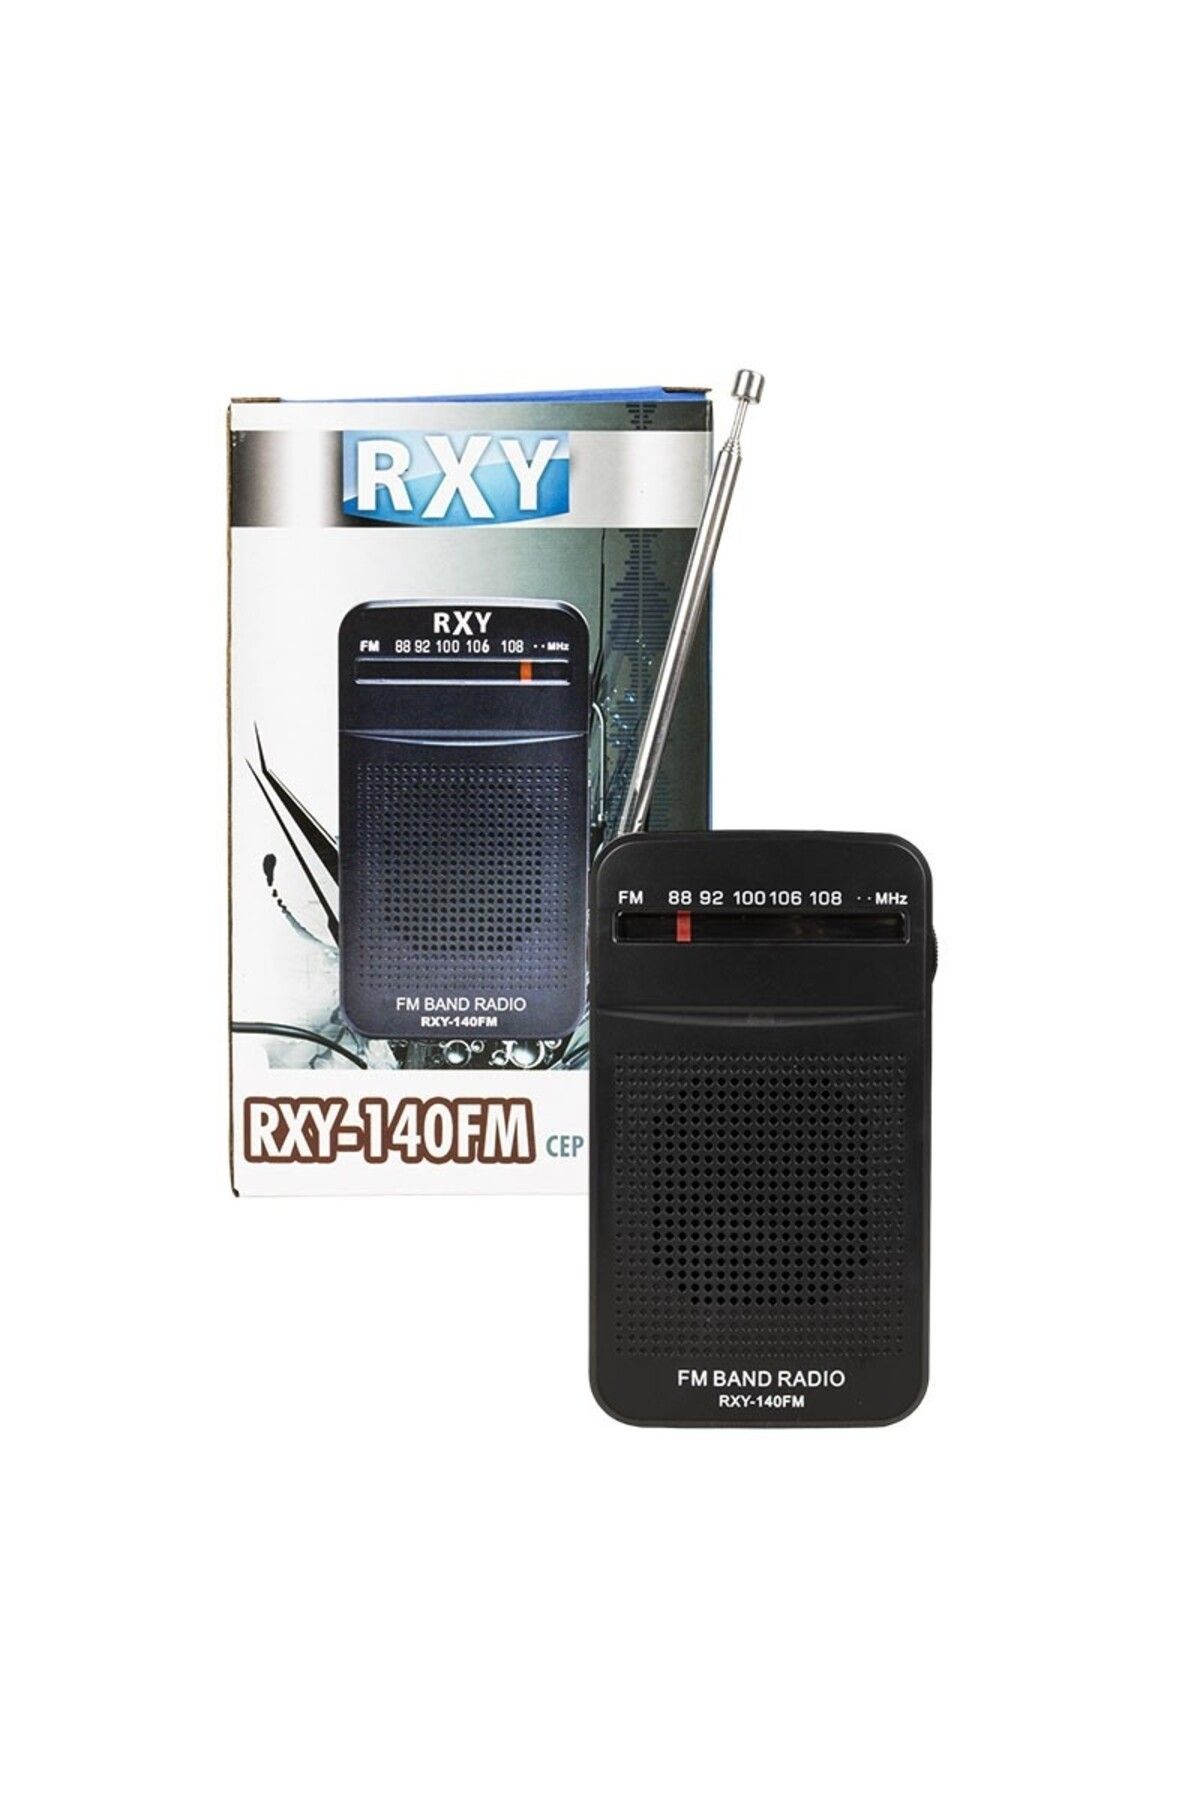 Roxy RXY-140FM Cep Tipi Pilli Mini Analog FM Radyo